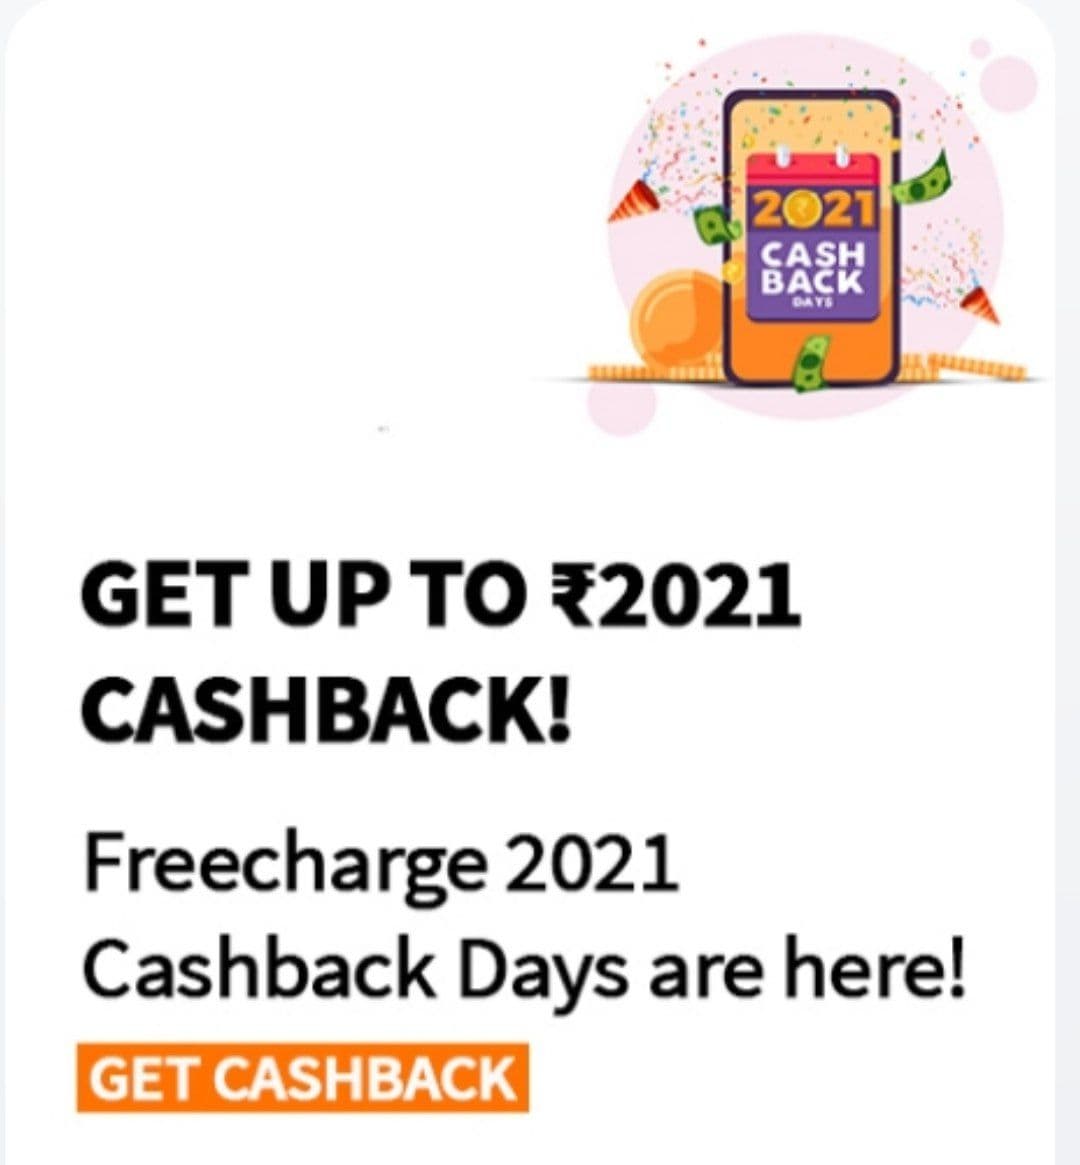 FreeCharge 2021 Cashback Days